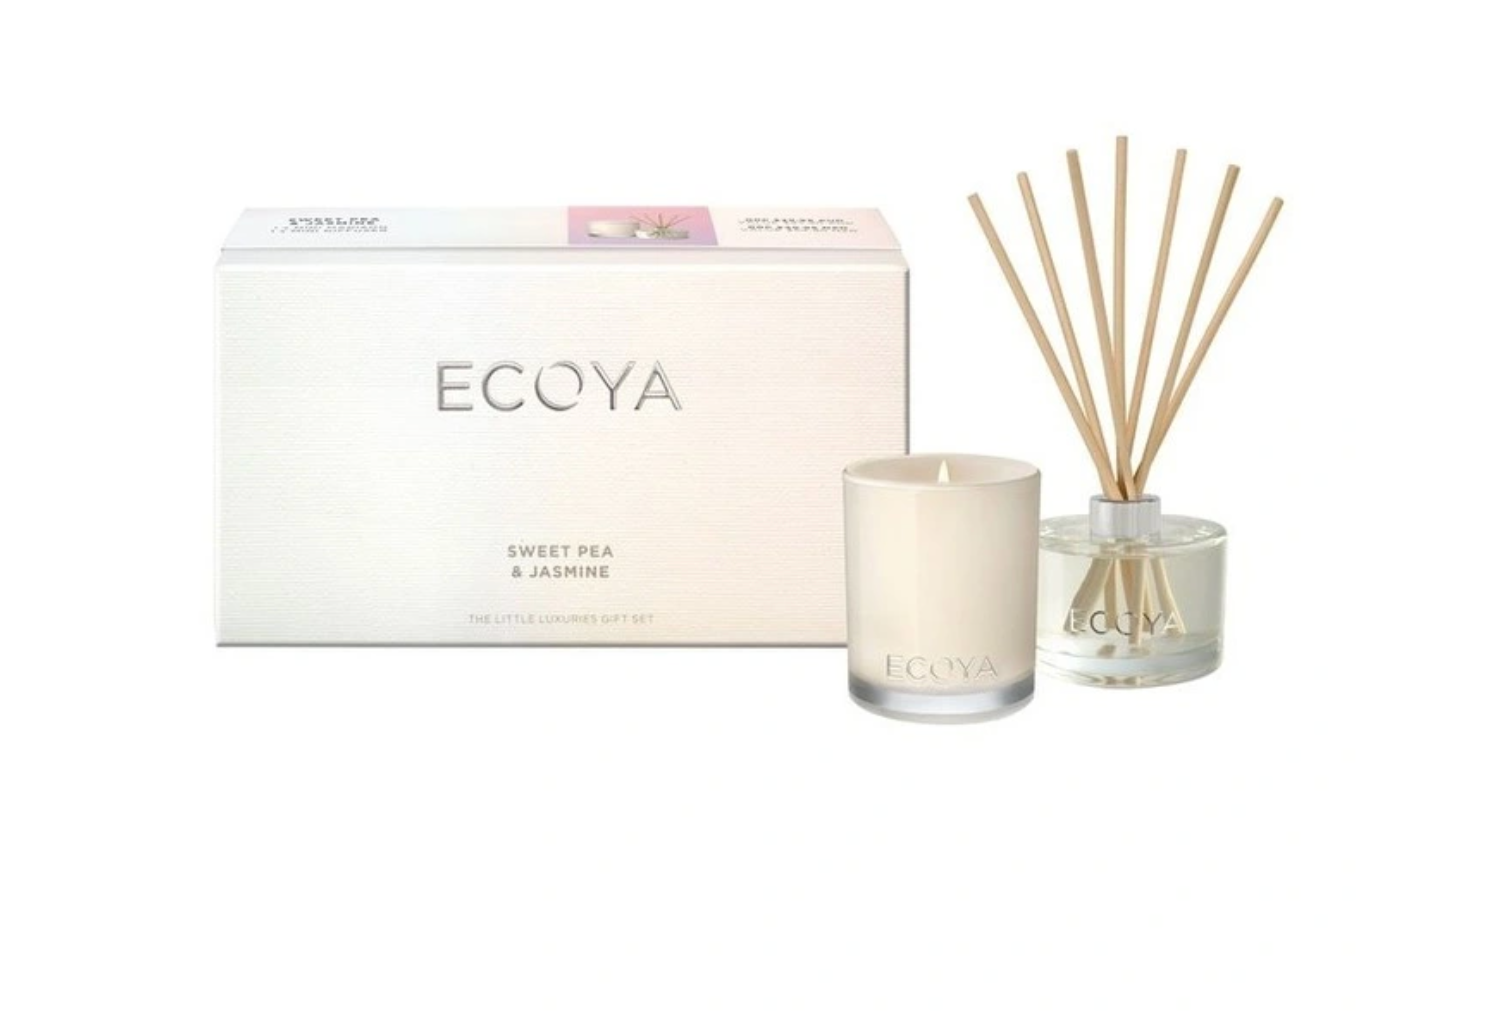 ECOYA Sweet Pea & Jasmine Luxury Gift Set